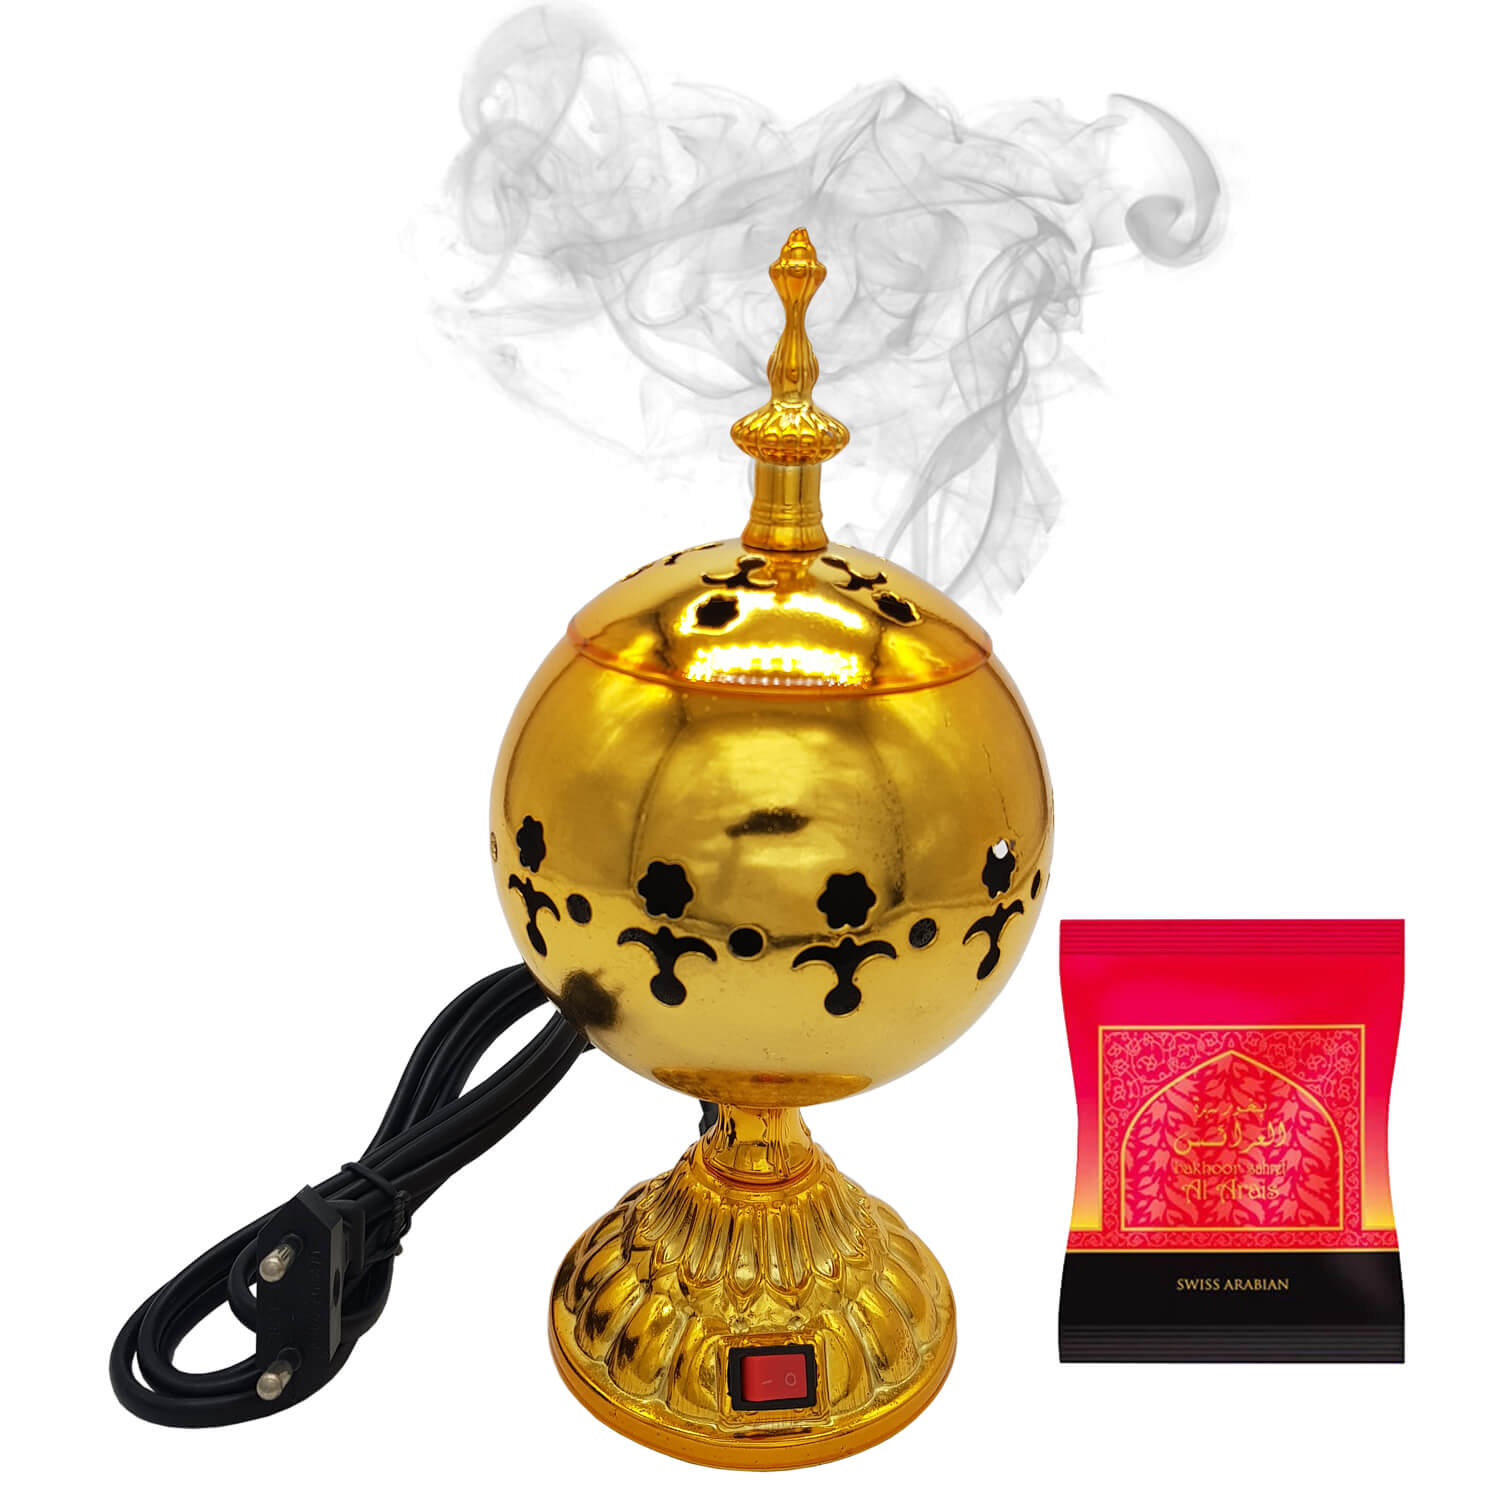 Exclusive Electrical Bakhoor Burner & 40g Fragrance Paste - Golden